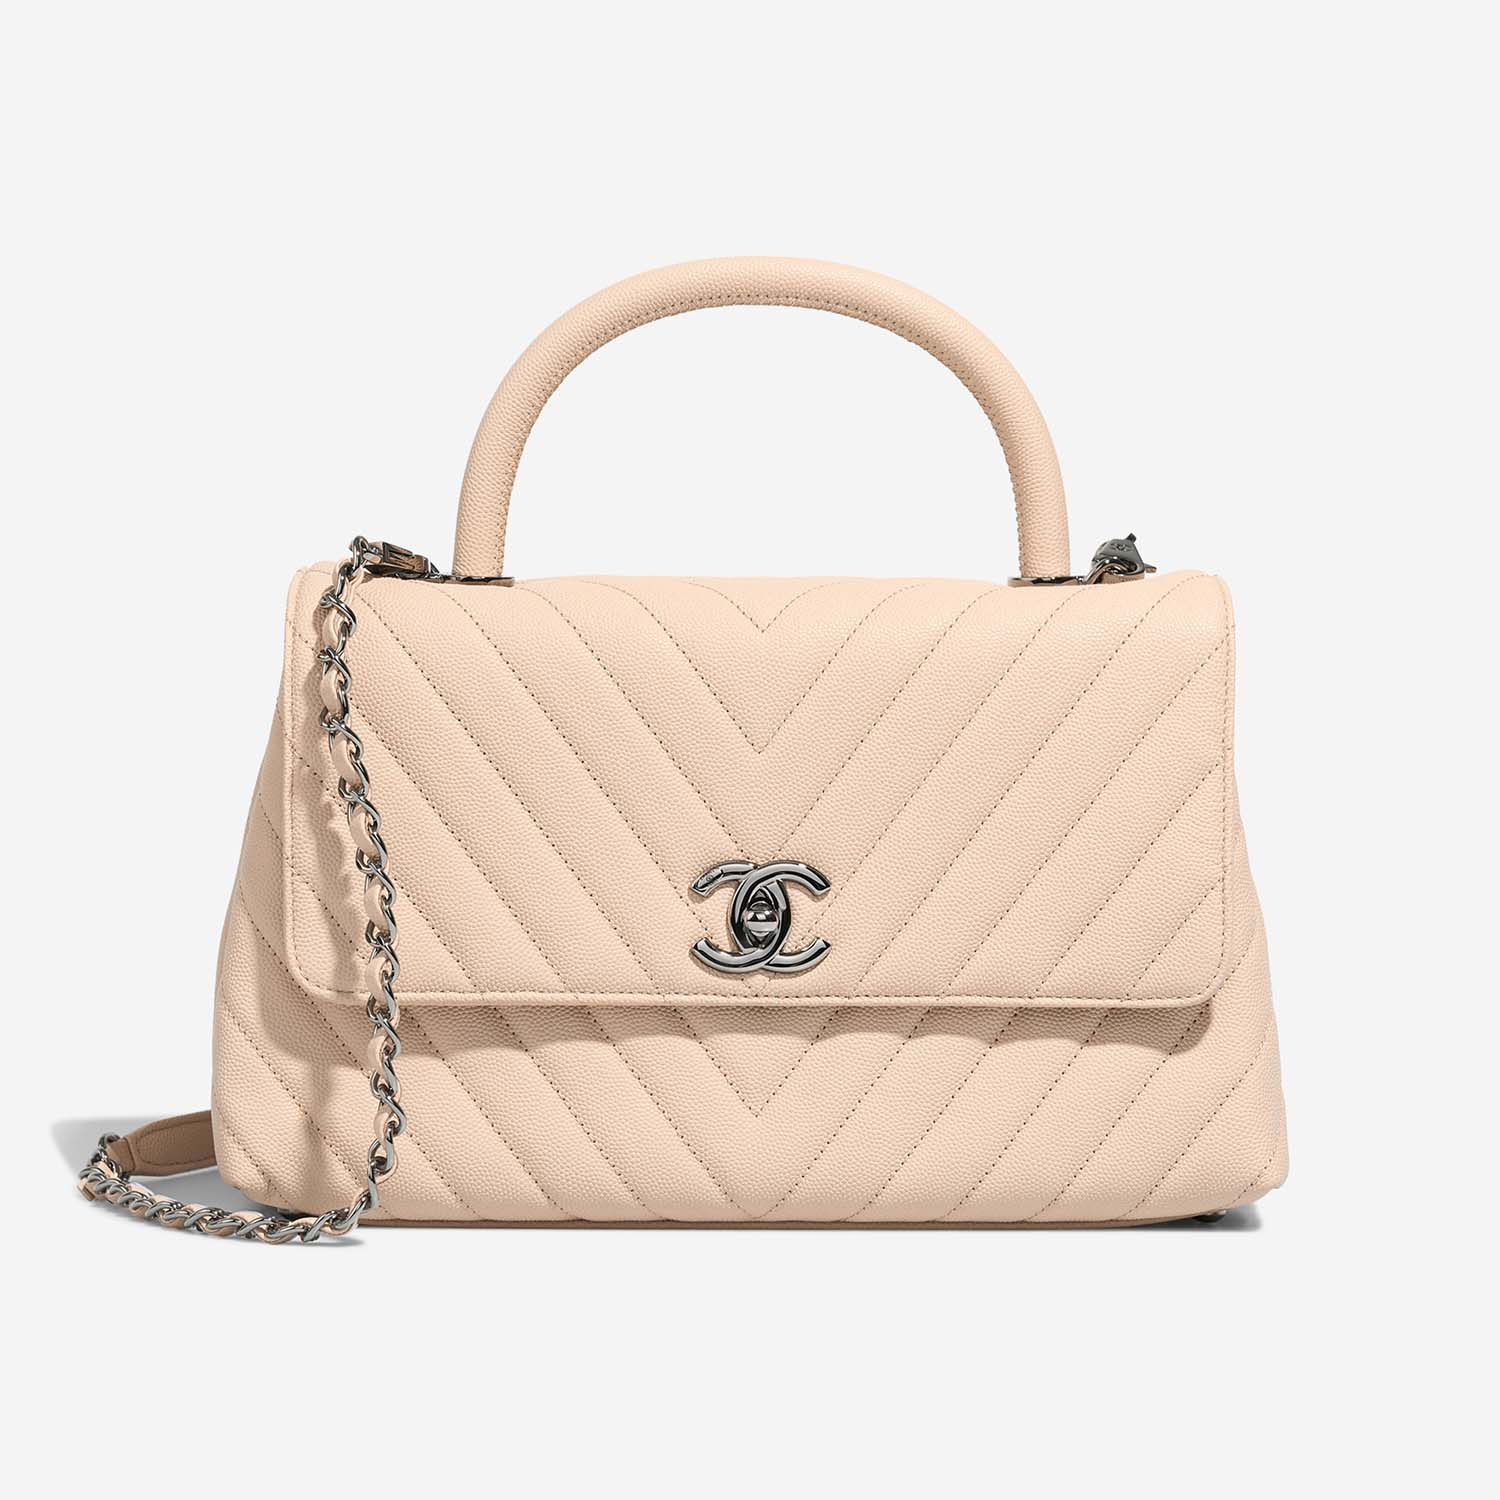 Chanel TimelessHandle Medium Beige Front S | Verkaufen Sie Ihre Designer-Tasche auf Saclab.com